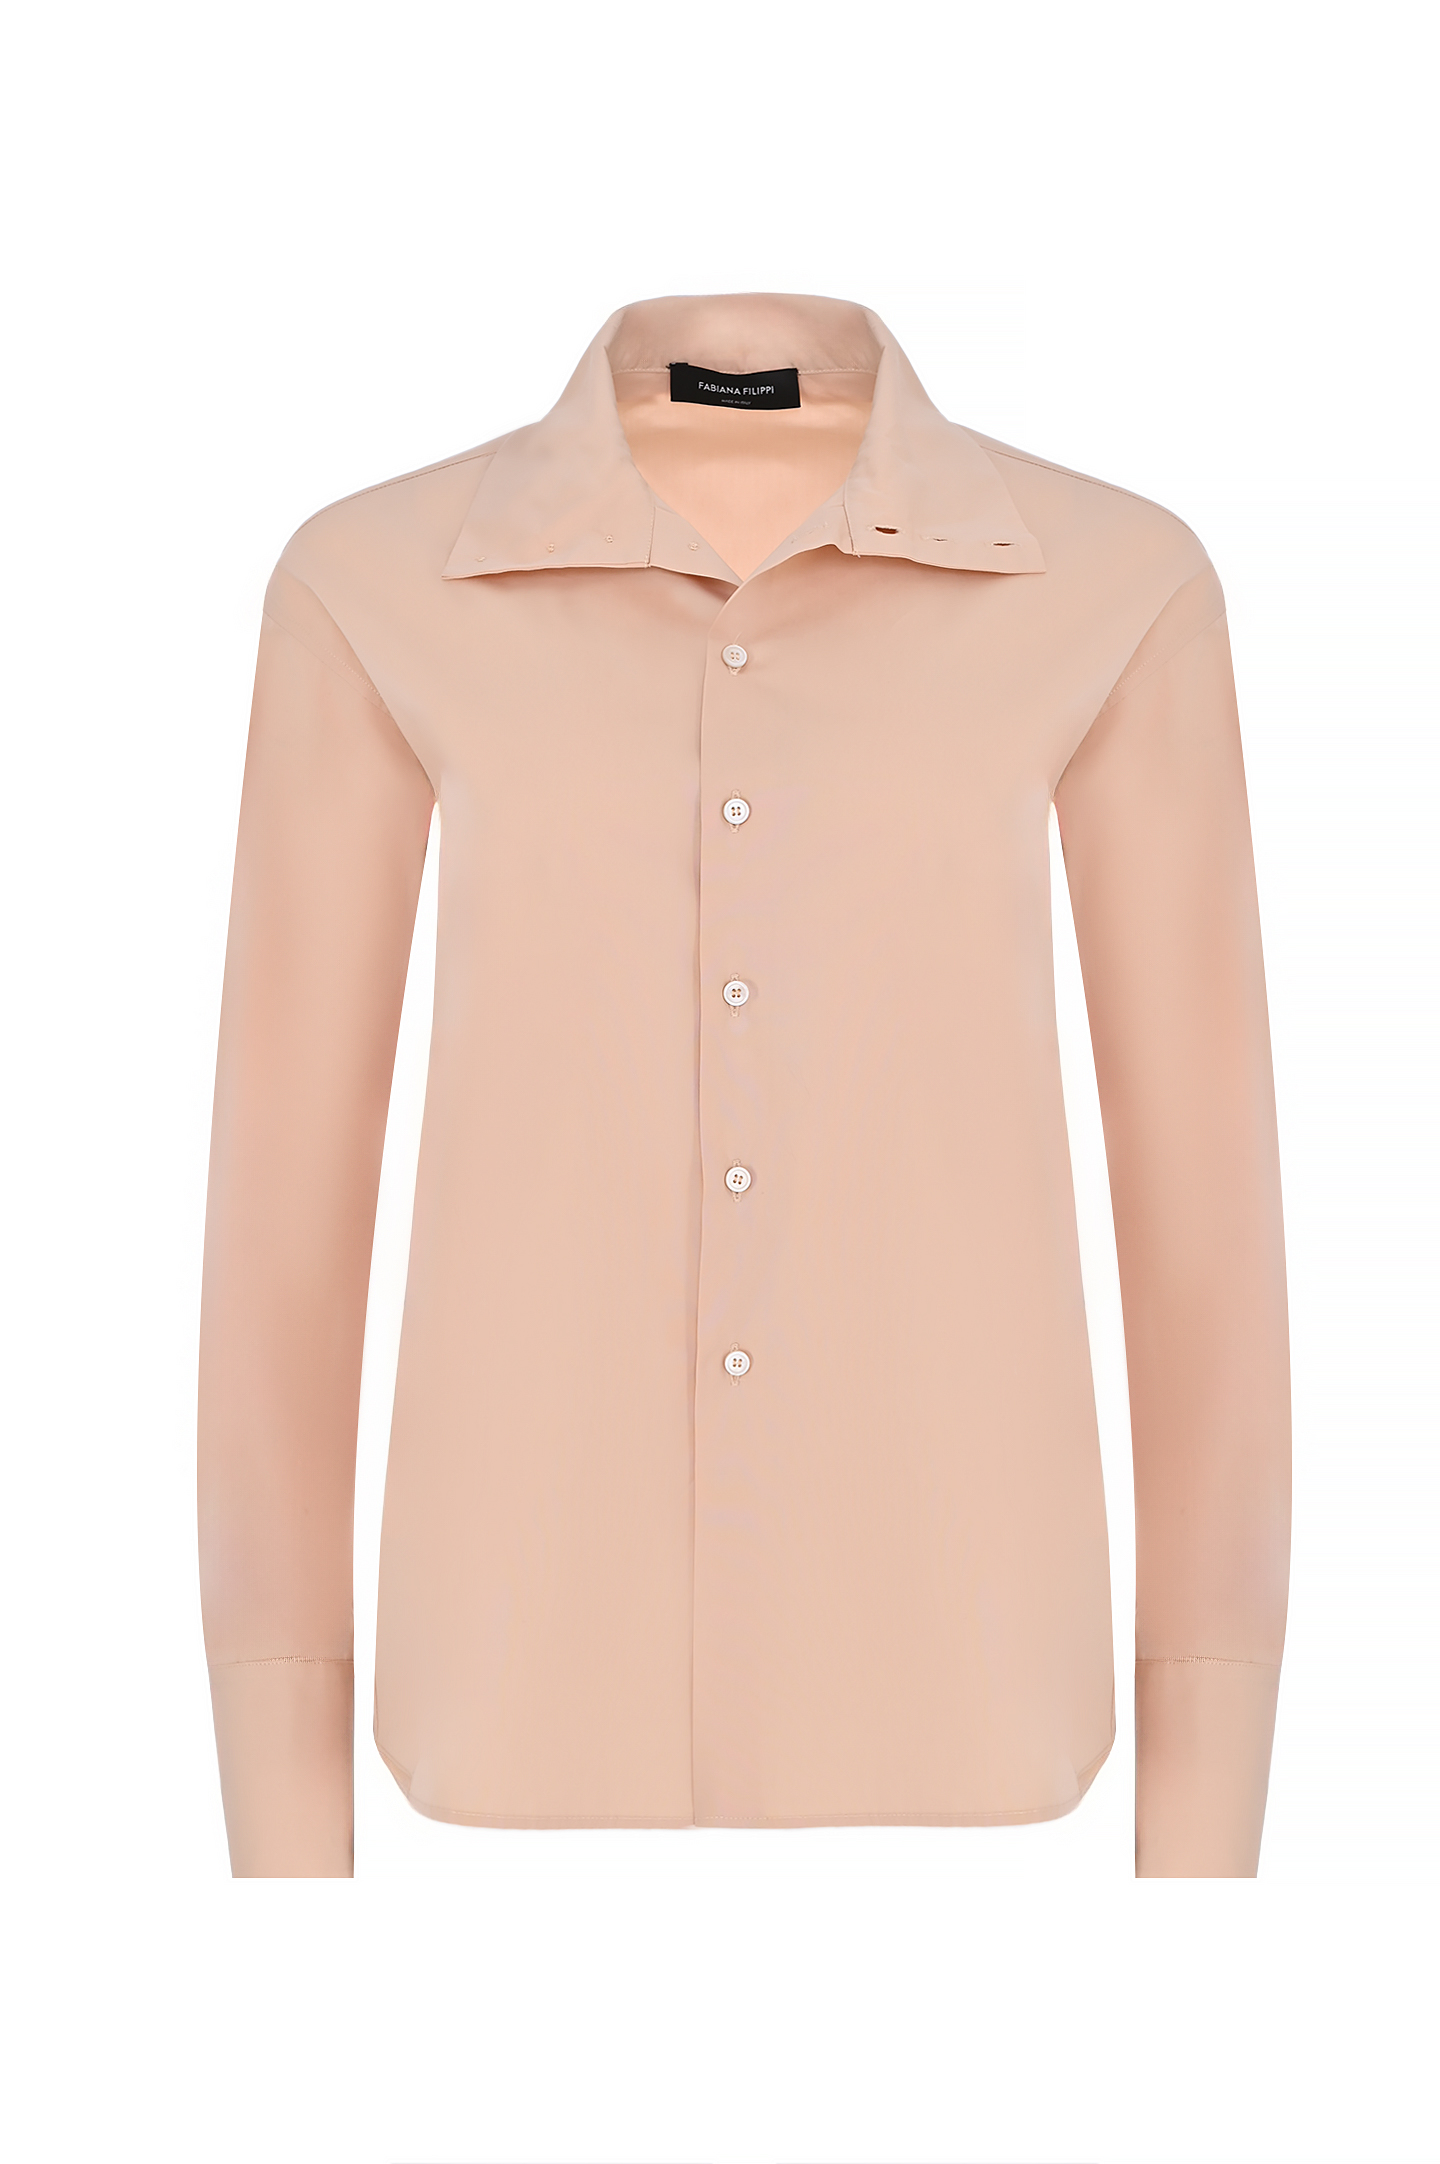 Блуза FABIANA FILIPPI CAD264F236 D614, цвет: Персиковый, Женский